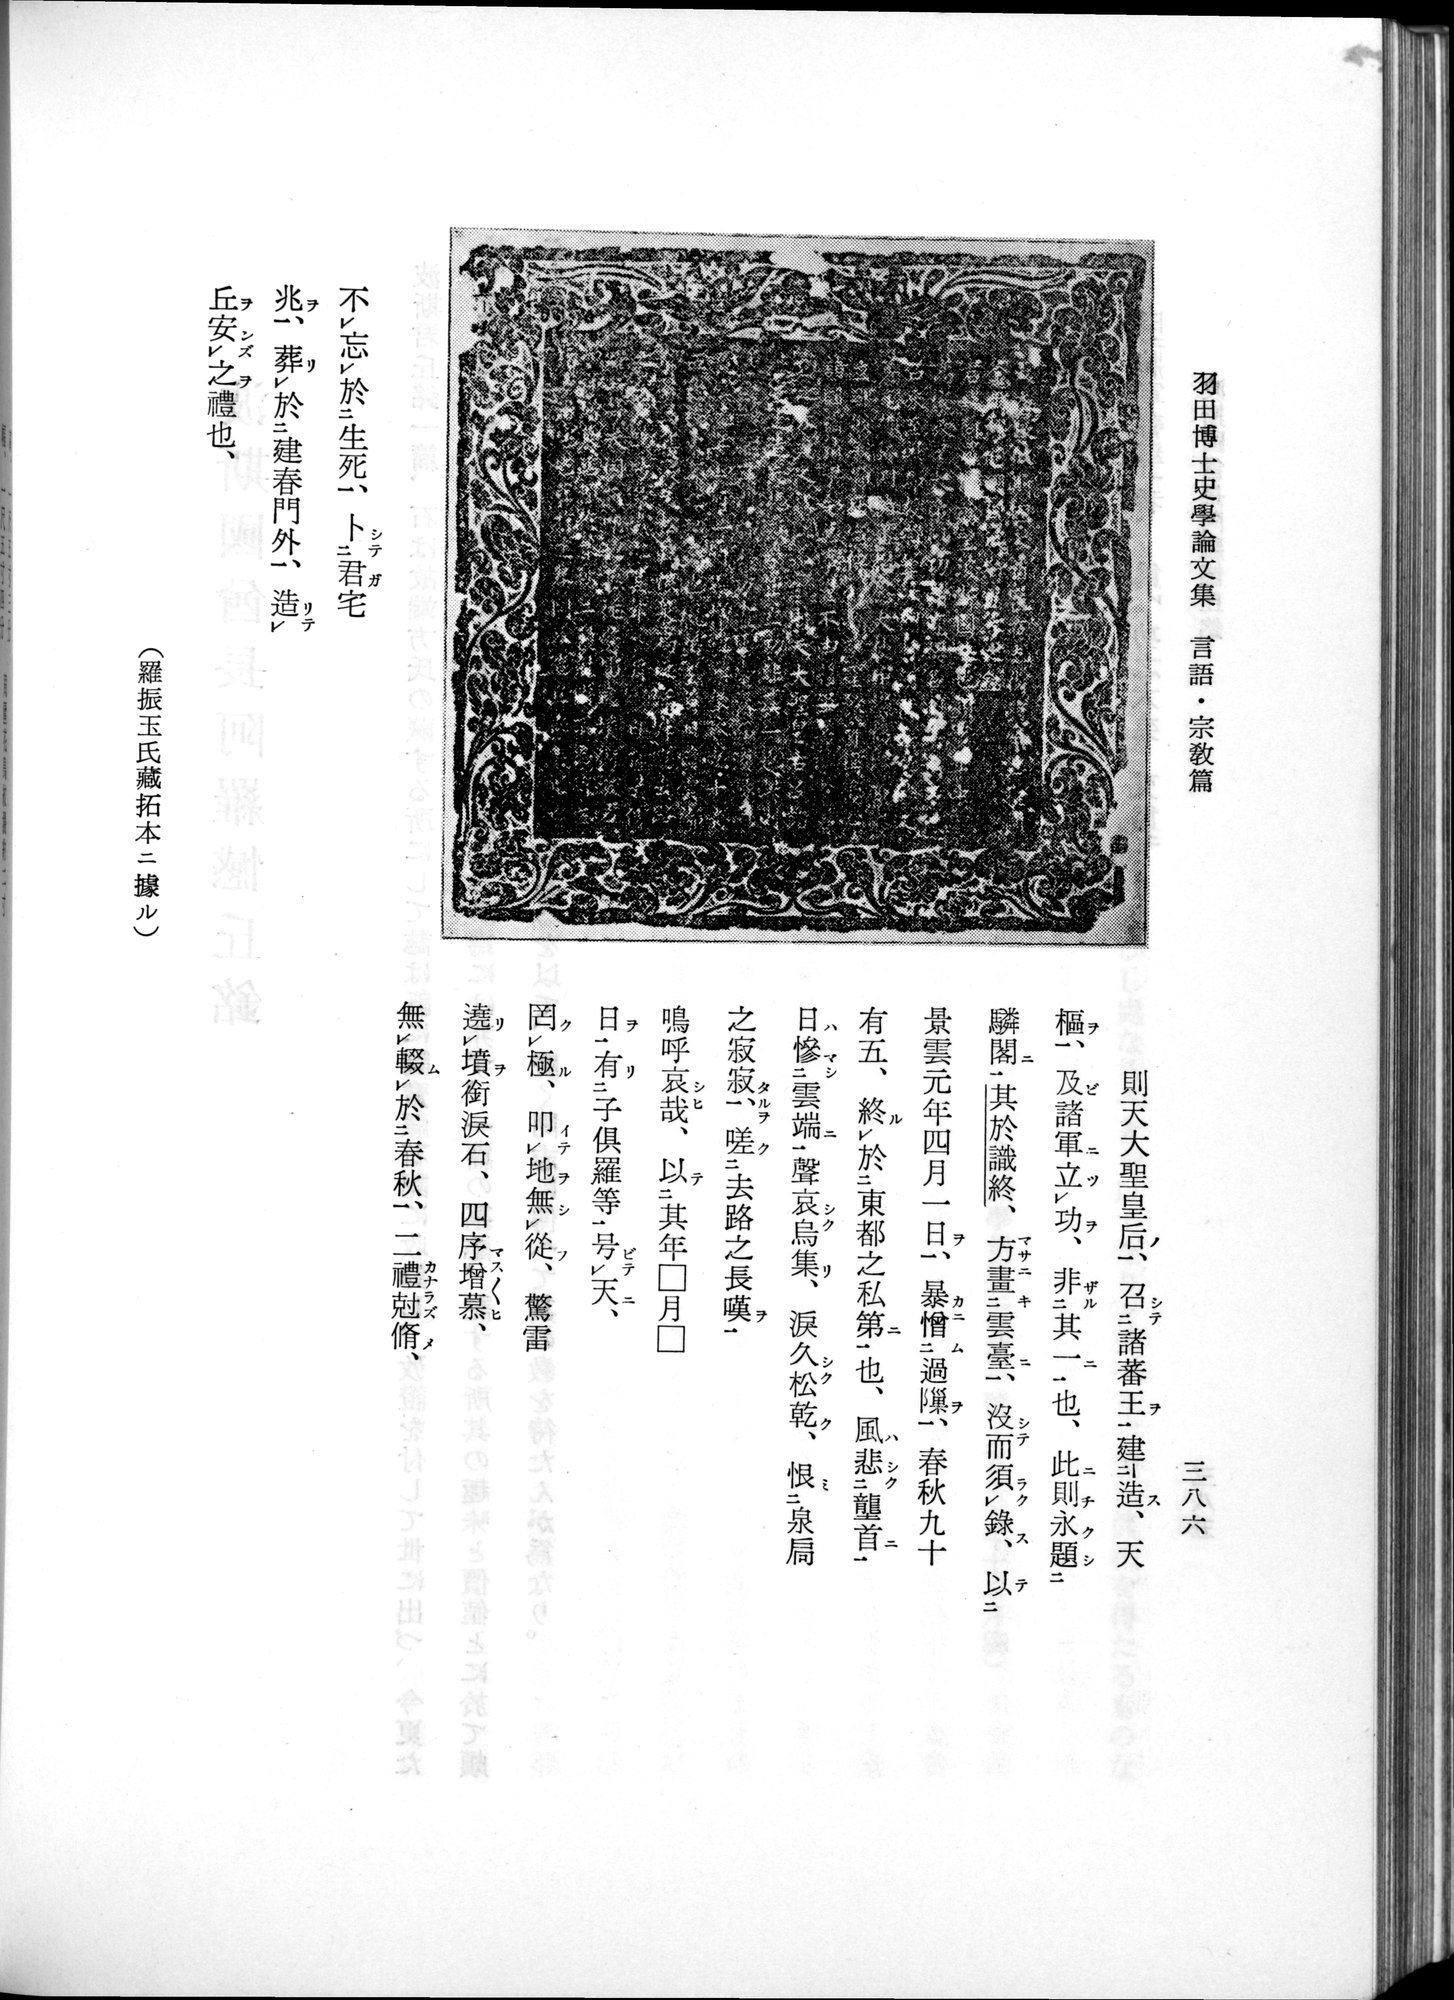 羽田博士史学論文集 : vol.2 / 448 ページ（白黒高解像度画像）